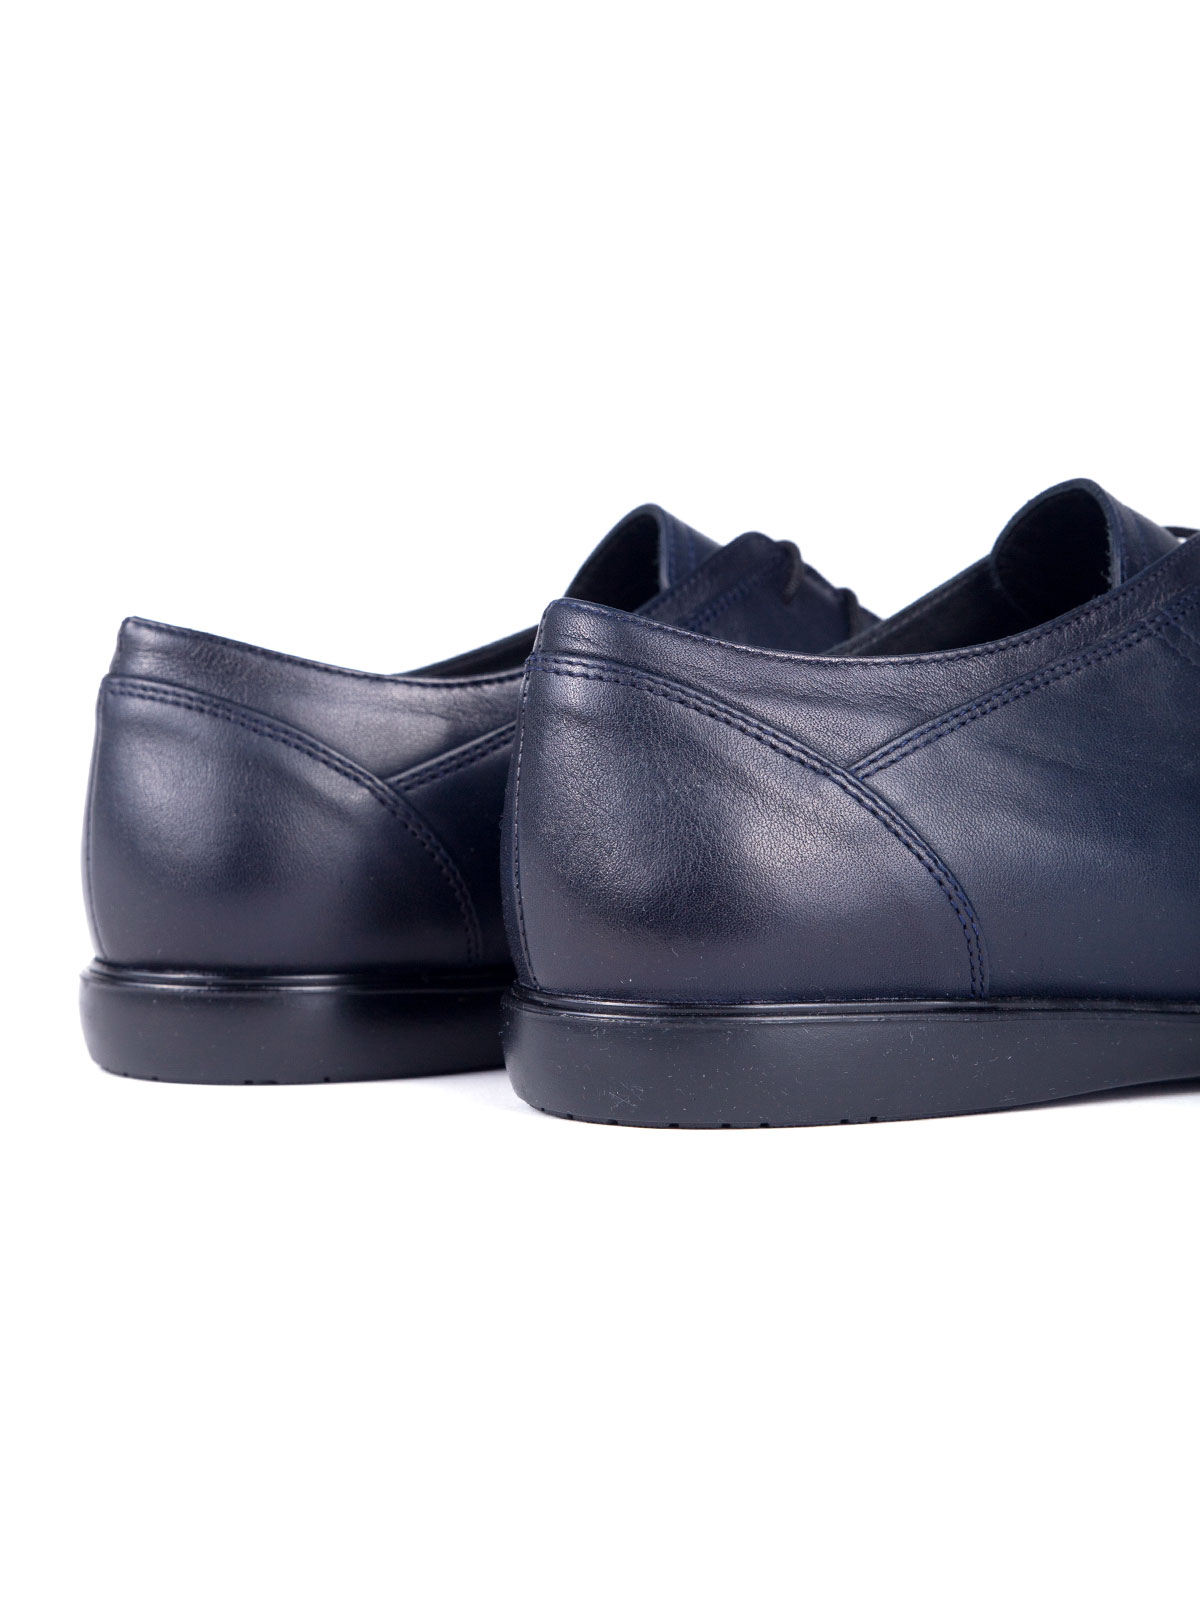 Σκούρα μπλε παπούτσια - 81054 - € 50.06 img3